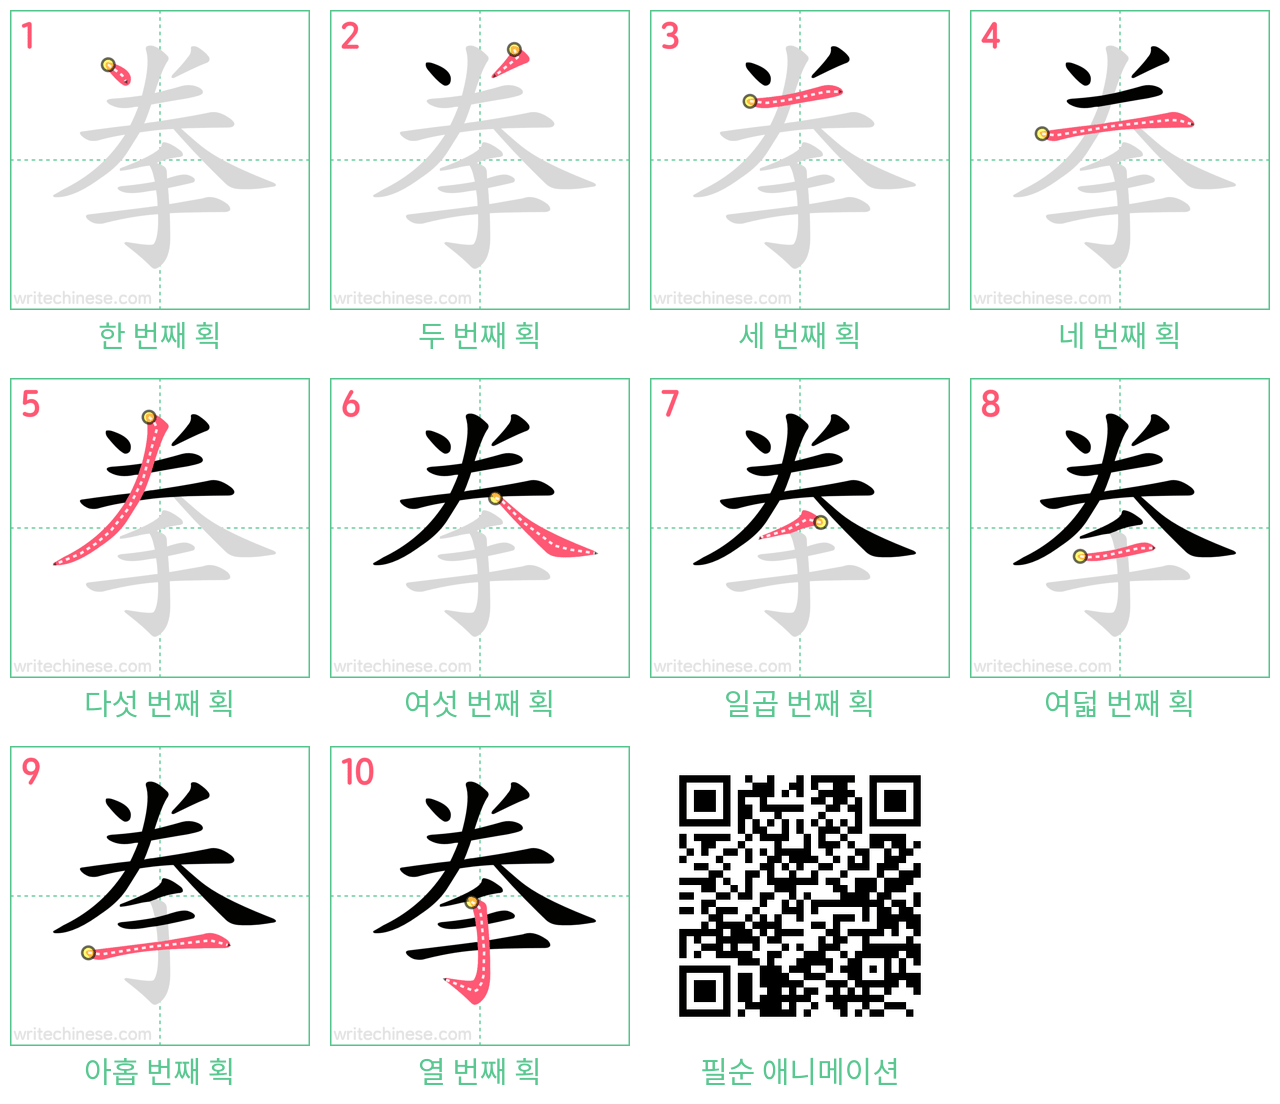 拳 step-by-step stroke order diagrams